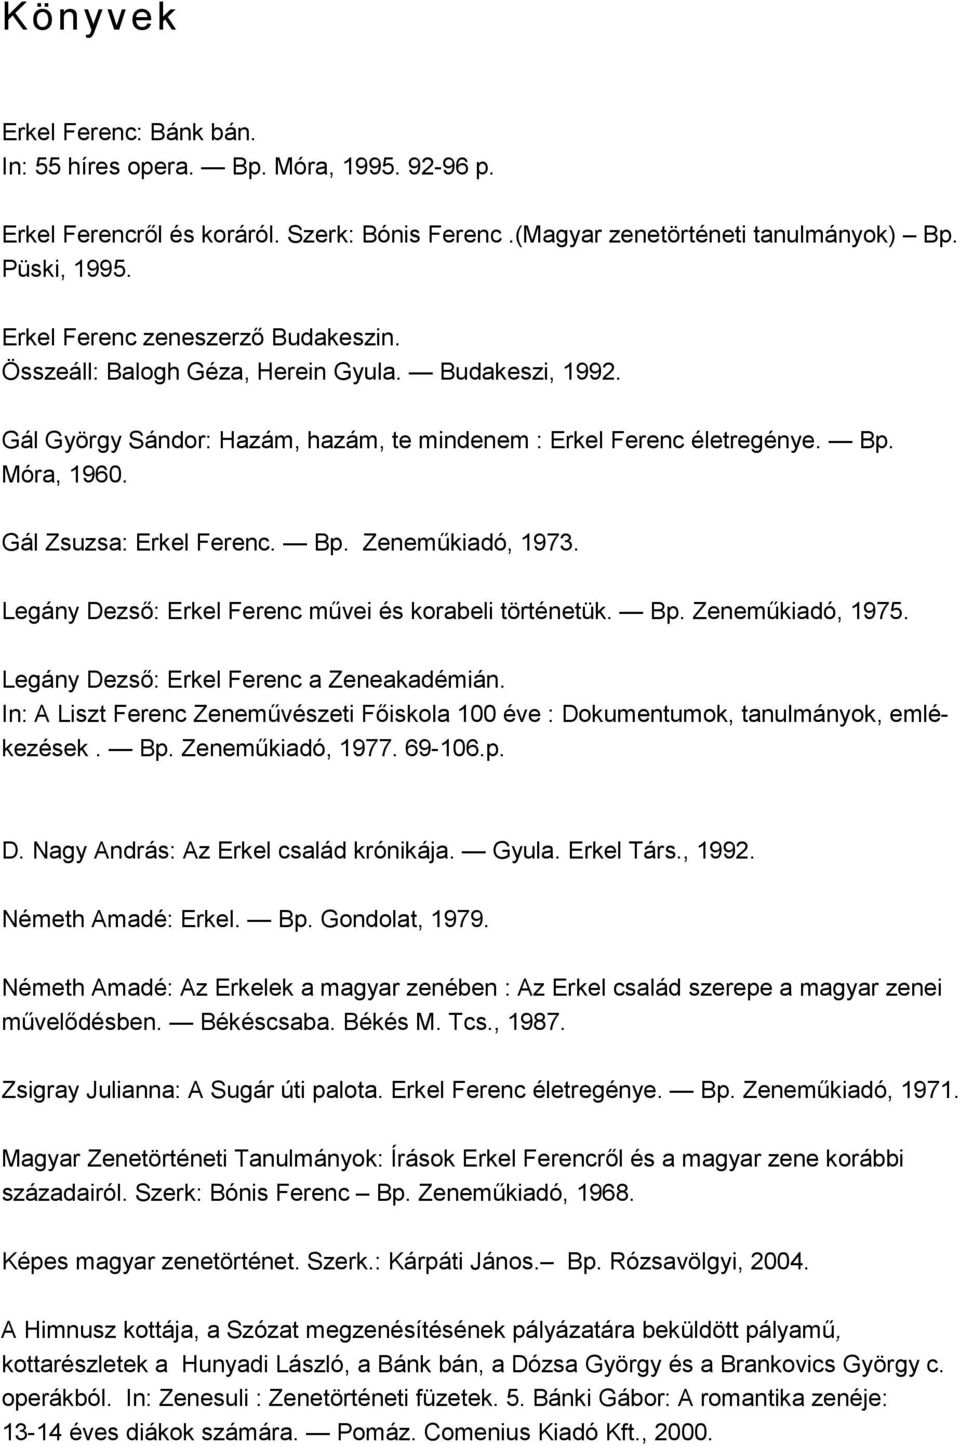 Erkel Ferencrıl szóló könyvek, cikkek, aprónyomtatványok és zenemővek  jegyzéke a budakeszi Nagy Gáspár Városi Könyvtárban - PDF Free Download